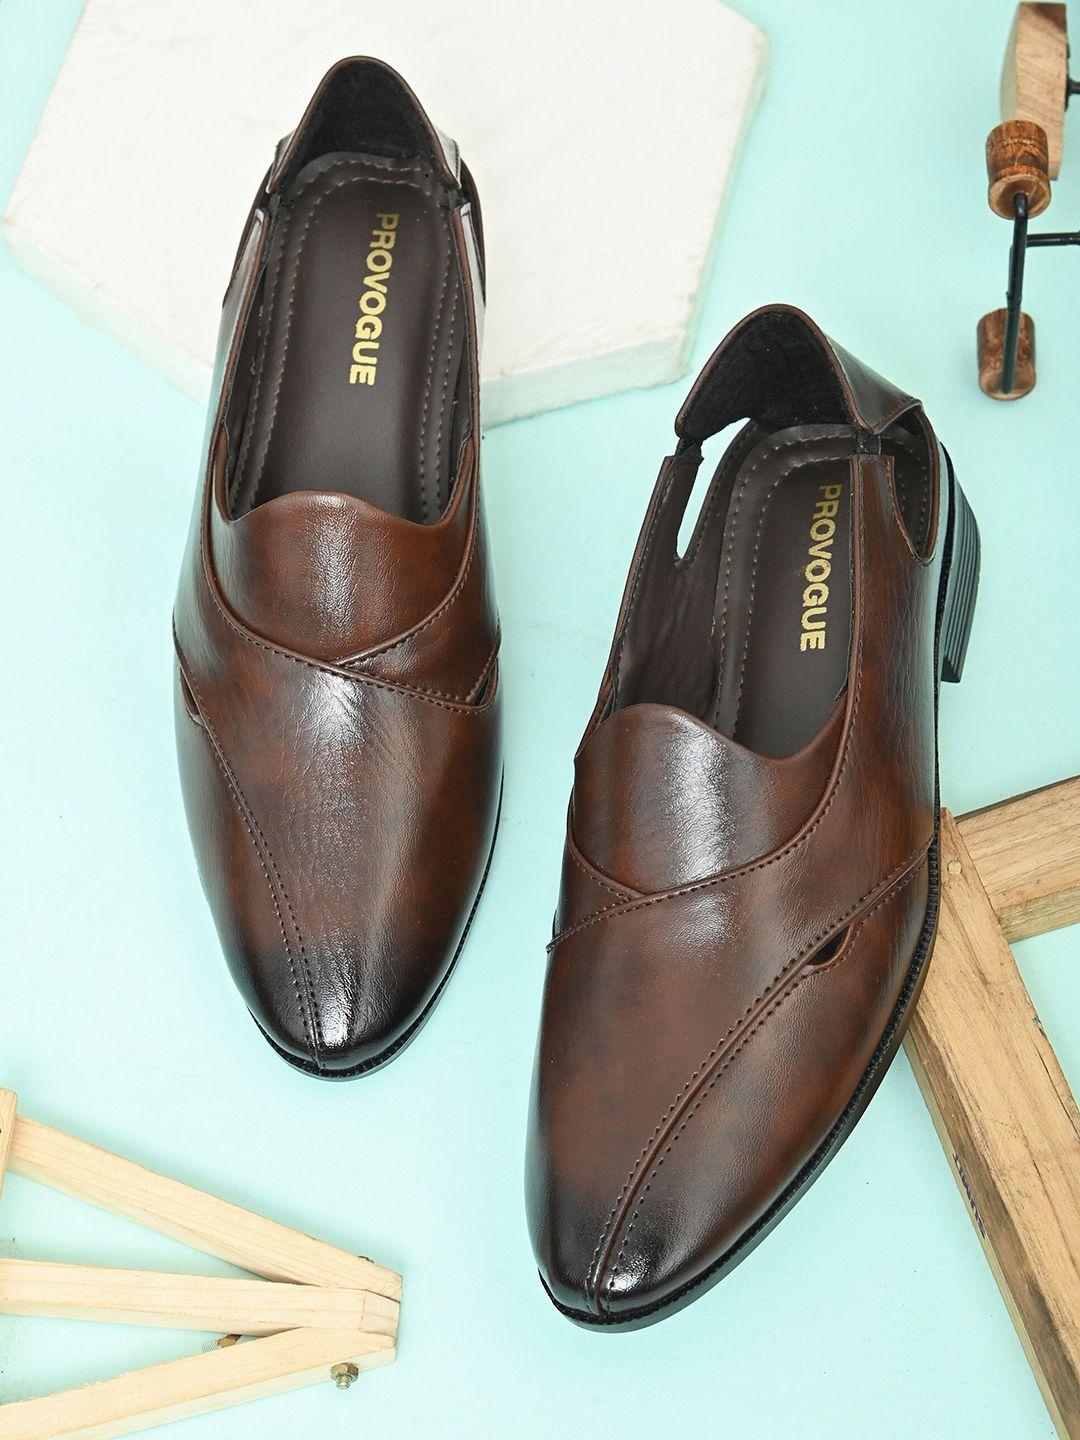 provogue-men-ethnic-shoe-style-sandals